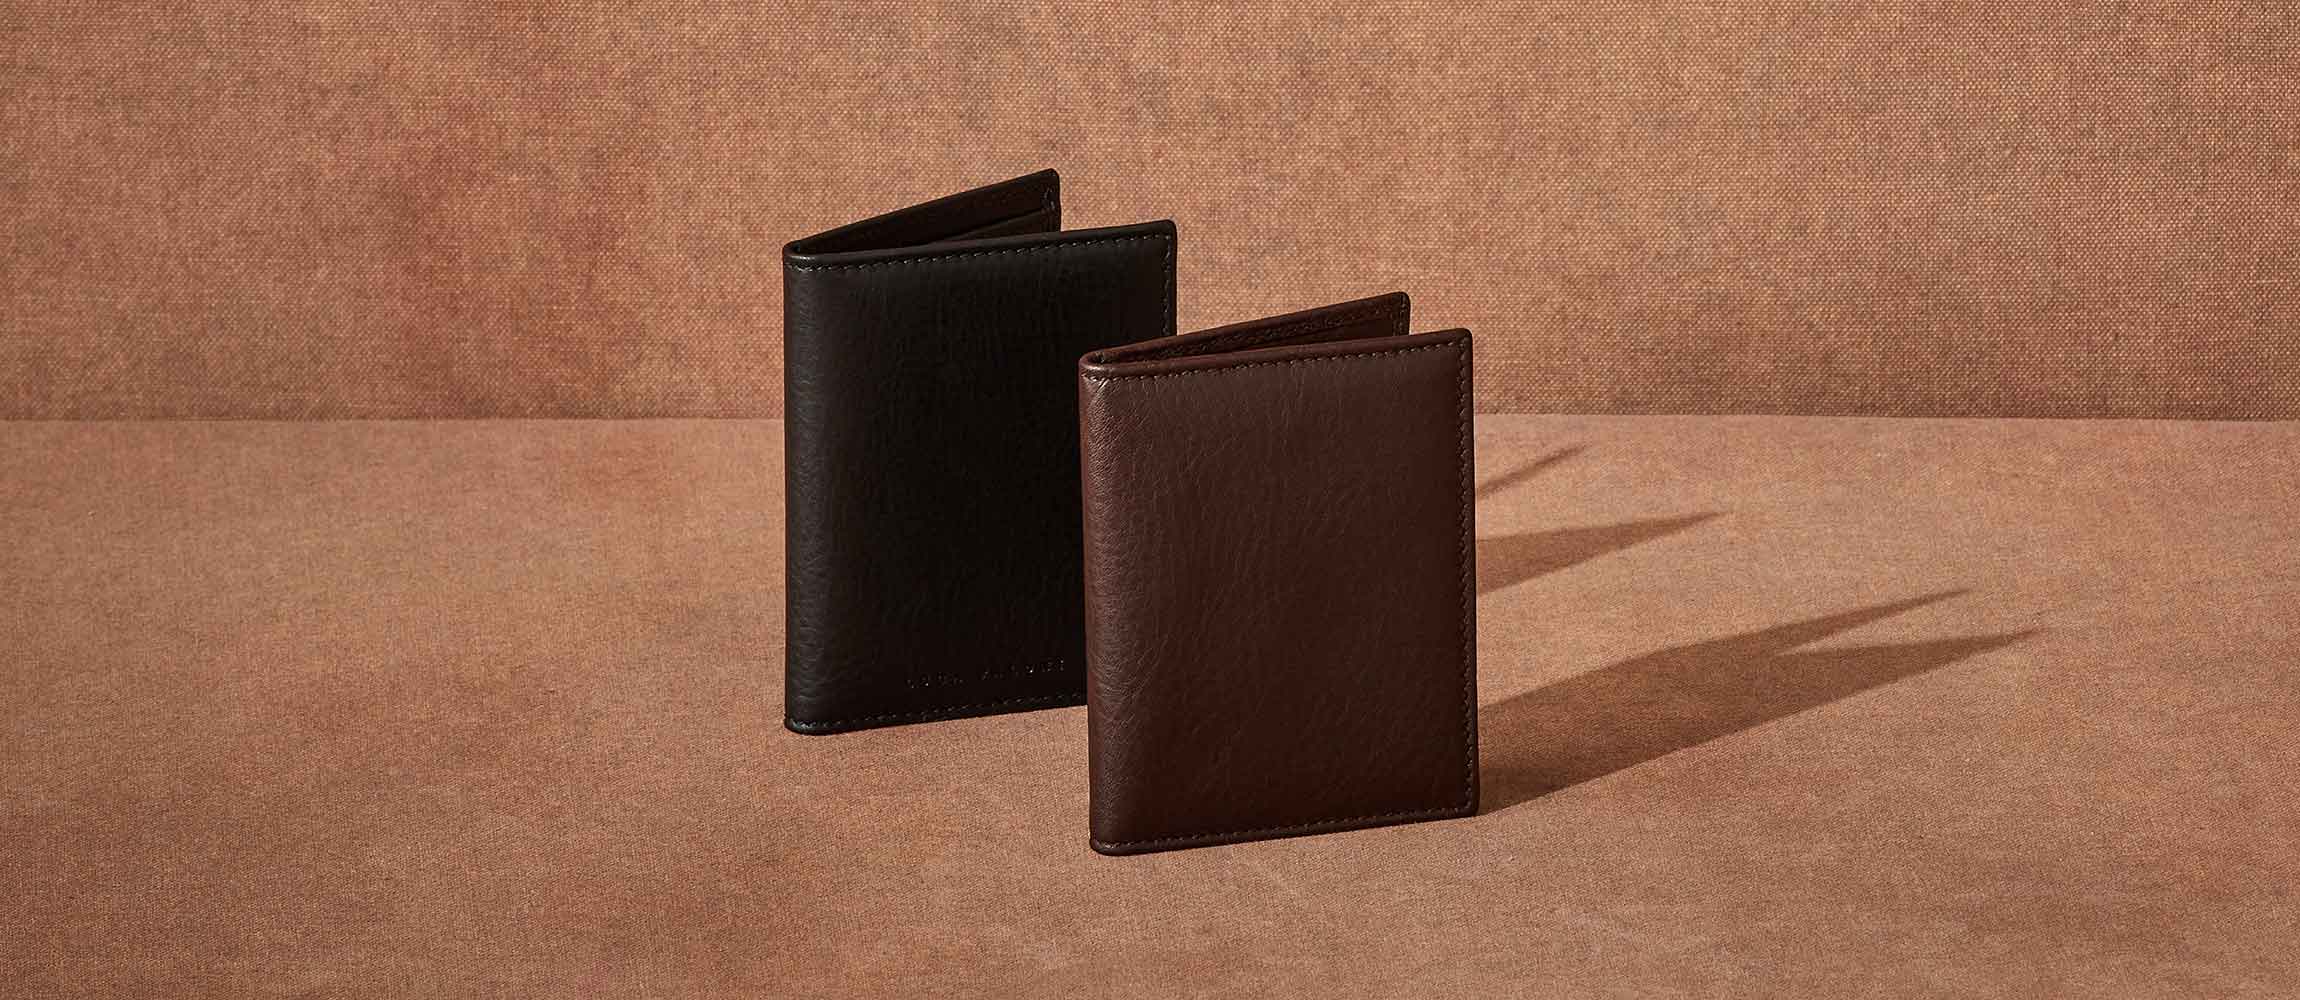 Italian Full Grain Leather Bifold Wallet for Men